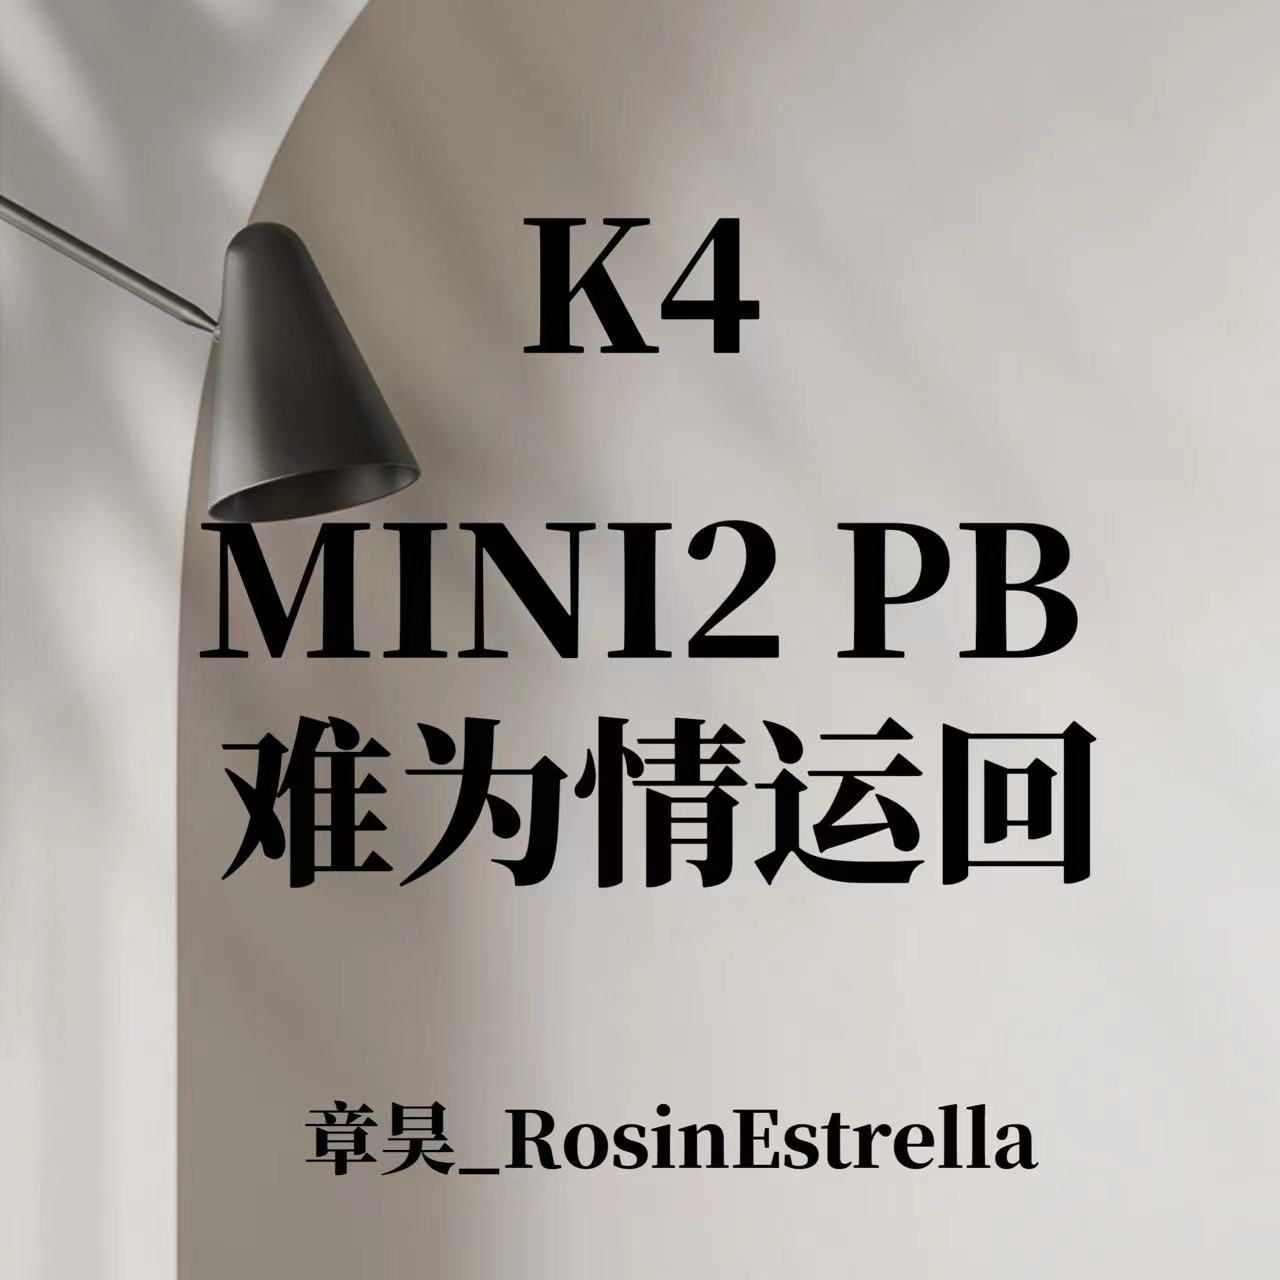 [全款 裸专][Ktown4u Special Gift] ZEROBASEONE - The 2nd Mini Album [MELTING POINT] (Random Ver.) _章昊_RosinEstrella